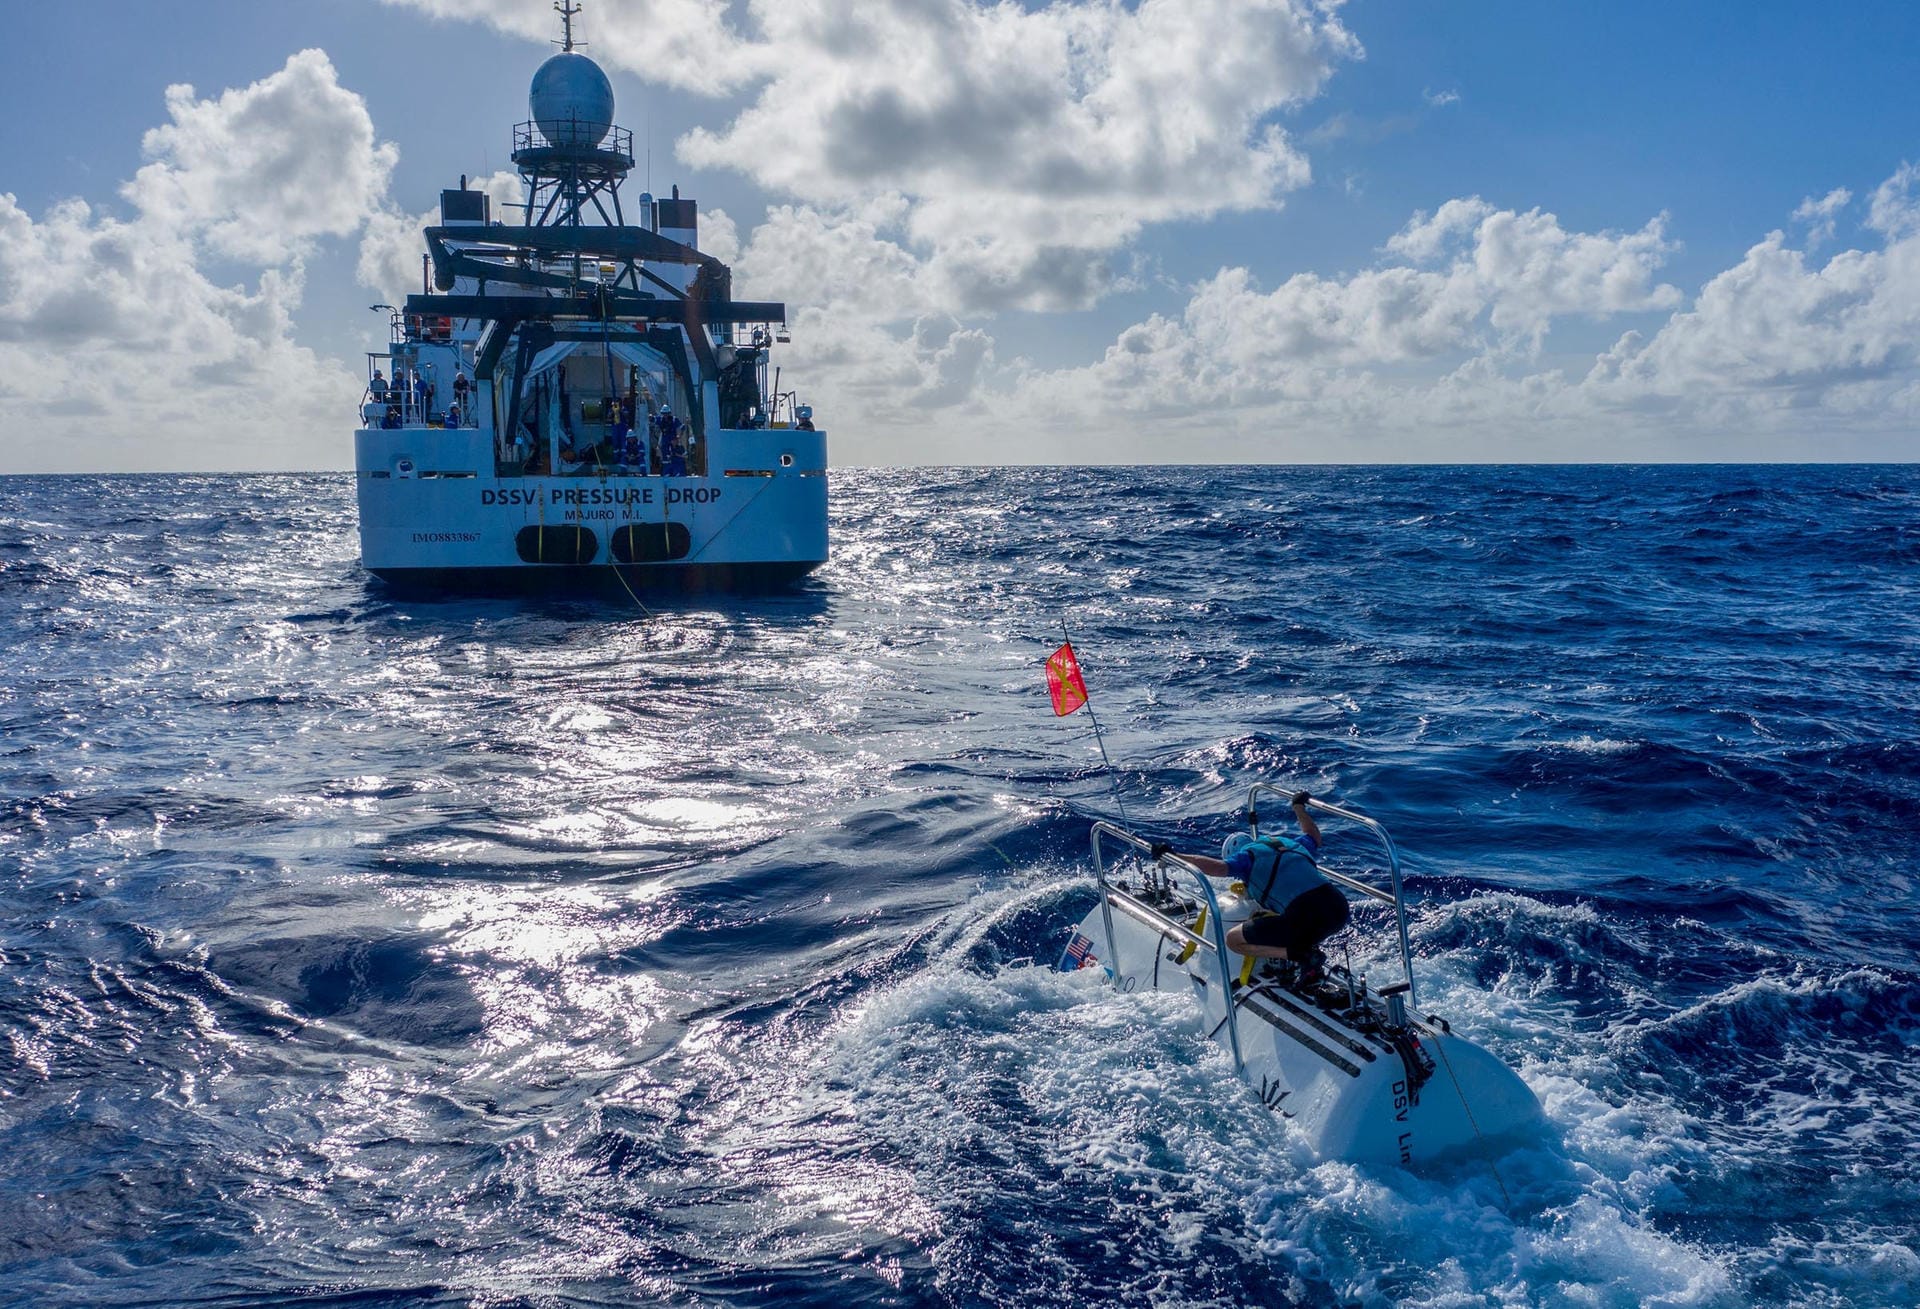 Das Unterseeboot treibt nahe dem Forschungsschiff "Pressure Drop": Der Marianagraben im Pazifik ist der tiefste Punkt der Erde.